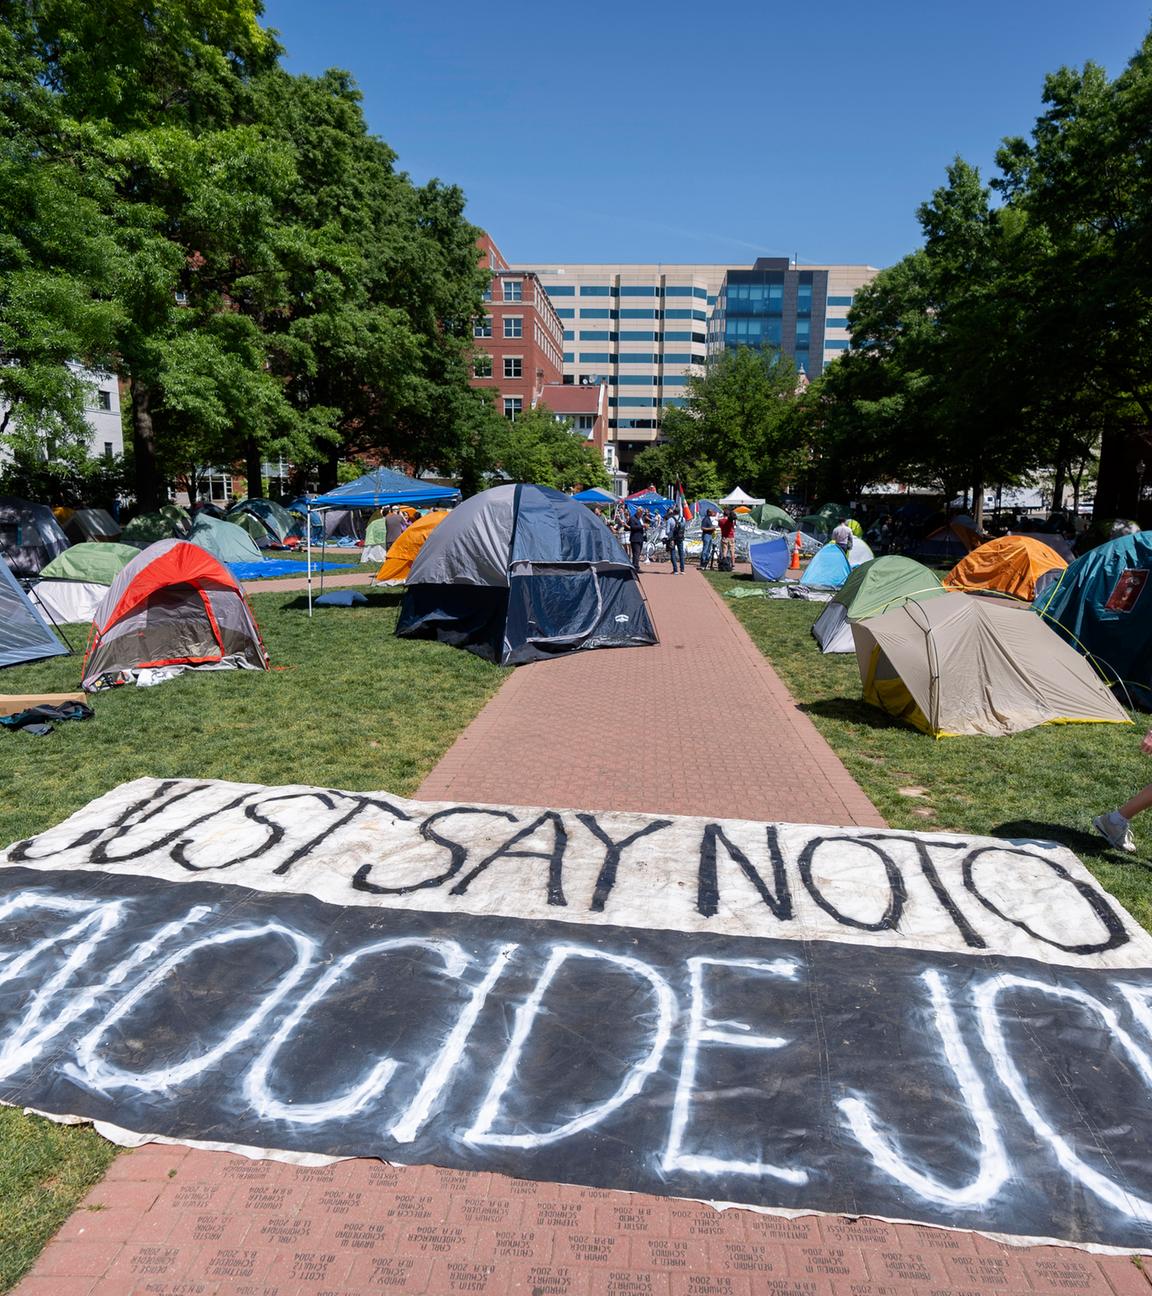 Im Innenhof einer Uni stehen mehrere Zelte auf einem Weg liegt ein Banner mit der Aufschrift "Sag Nein zu Völkermord Joe"